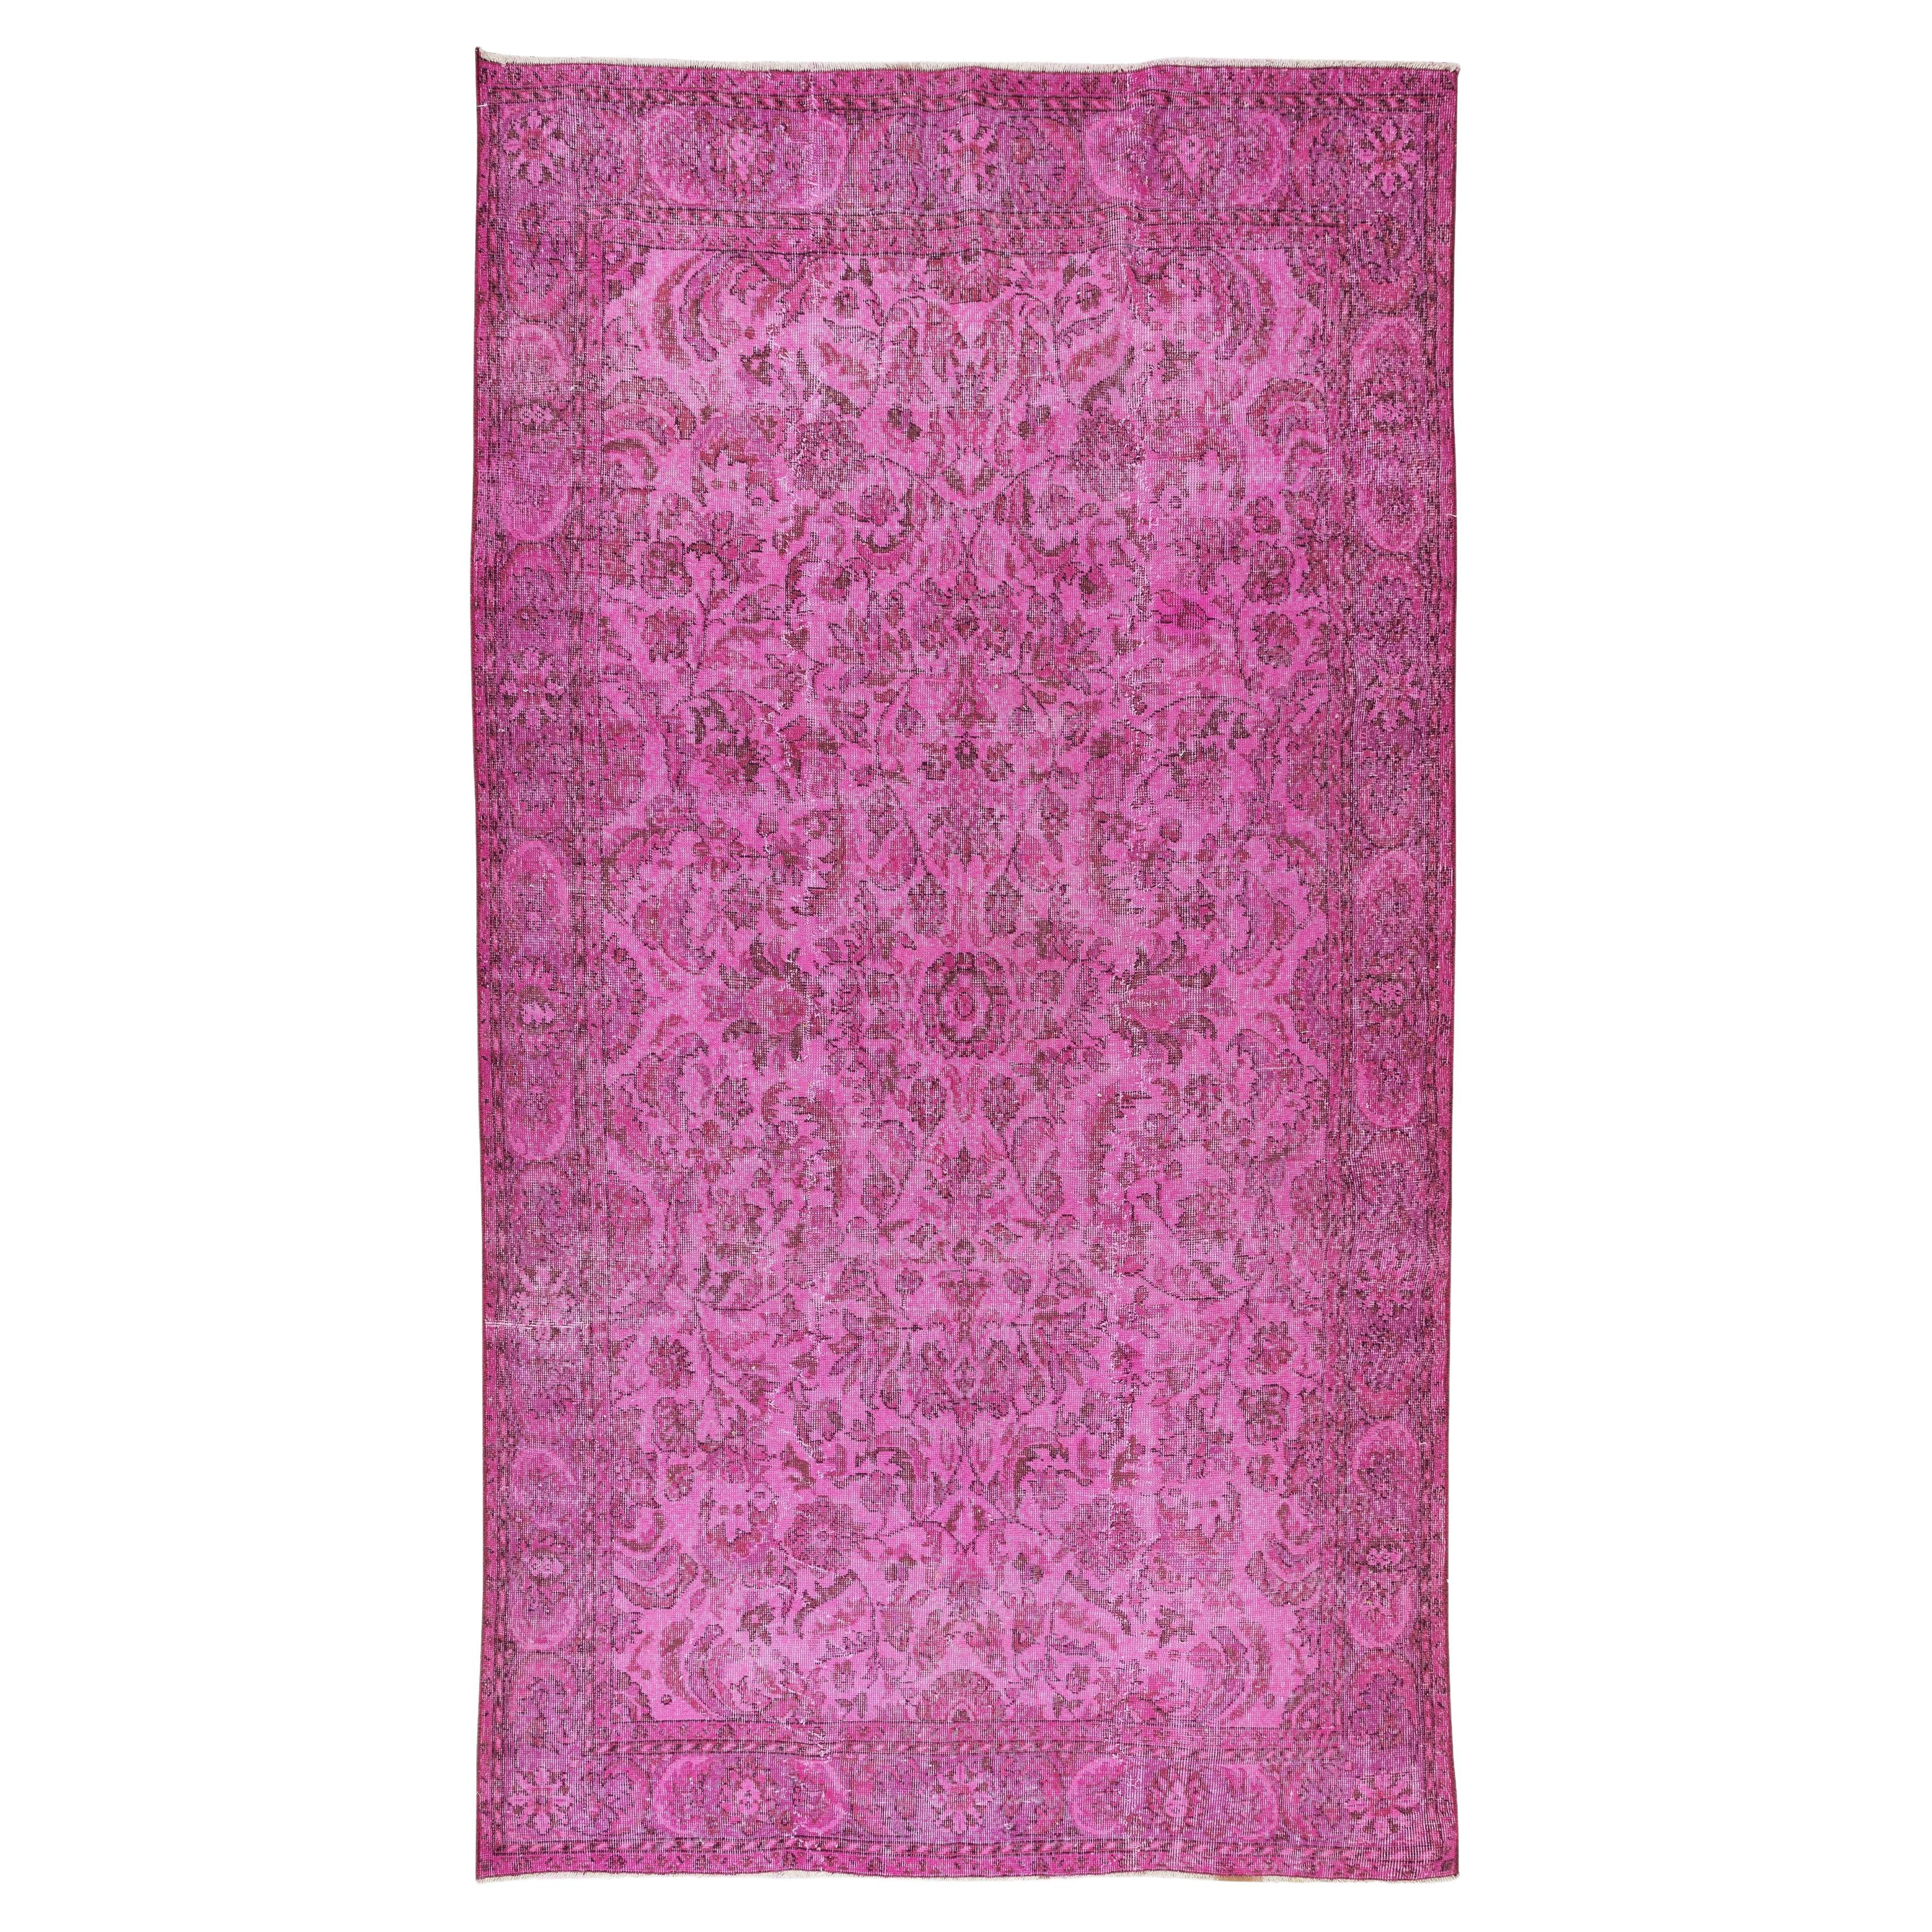 Handmade Turkish Vintage Rug Over-Dyed in Pink, Elegant Design Carpet For Sale